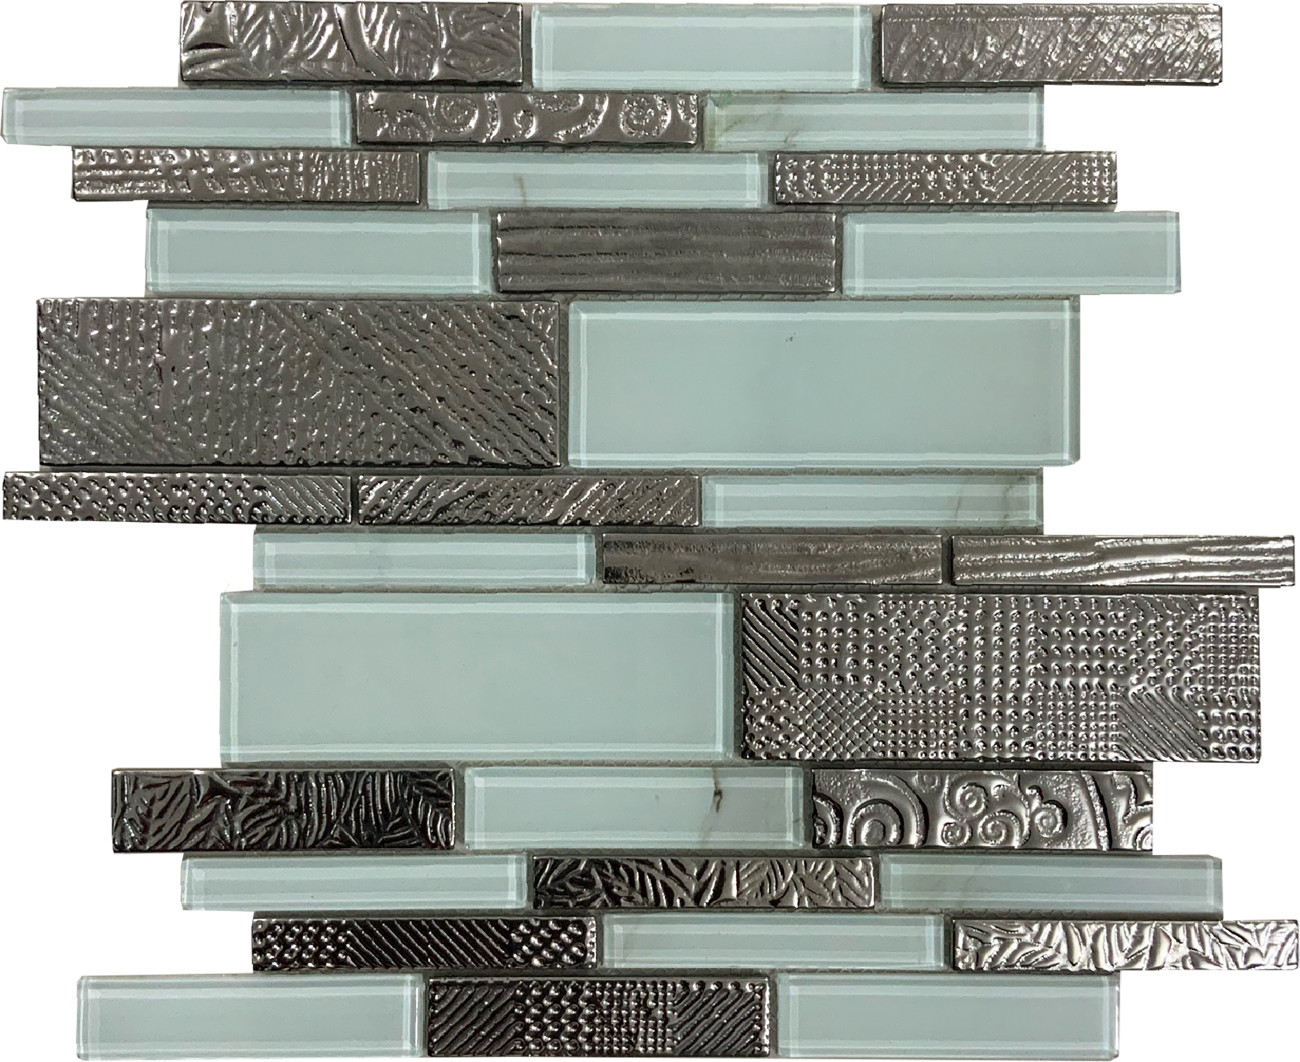 Malla o Mosaico Decorativo de vidrio BAQ, medida 30 x 30 cms. (base por altura). Diseño en tonos blanco mármol carrara con plata grabada. Caja de 5 piezas.